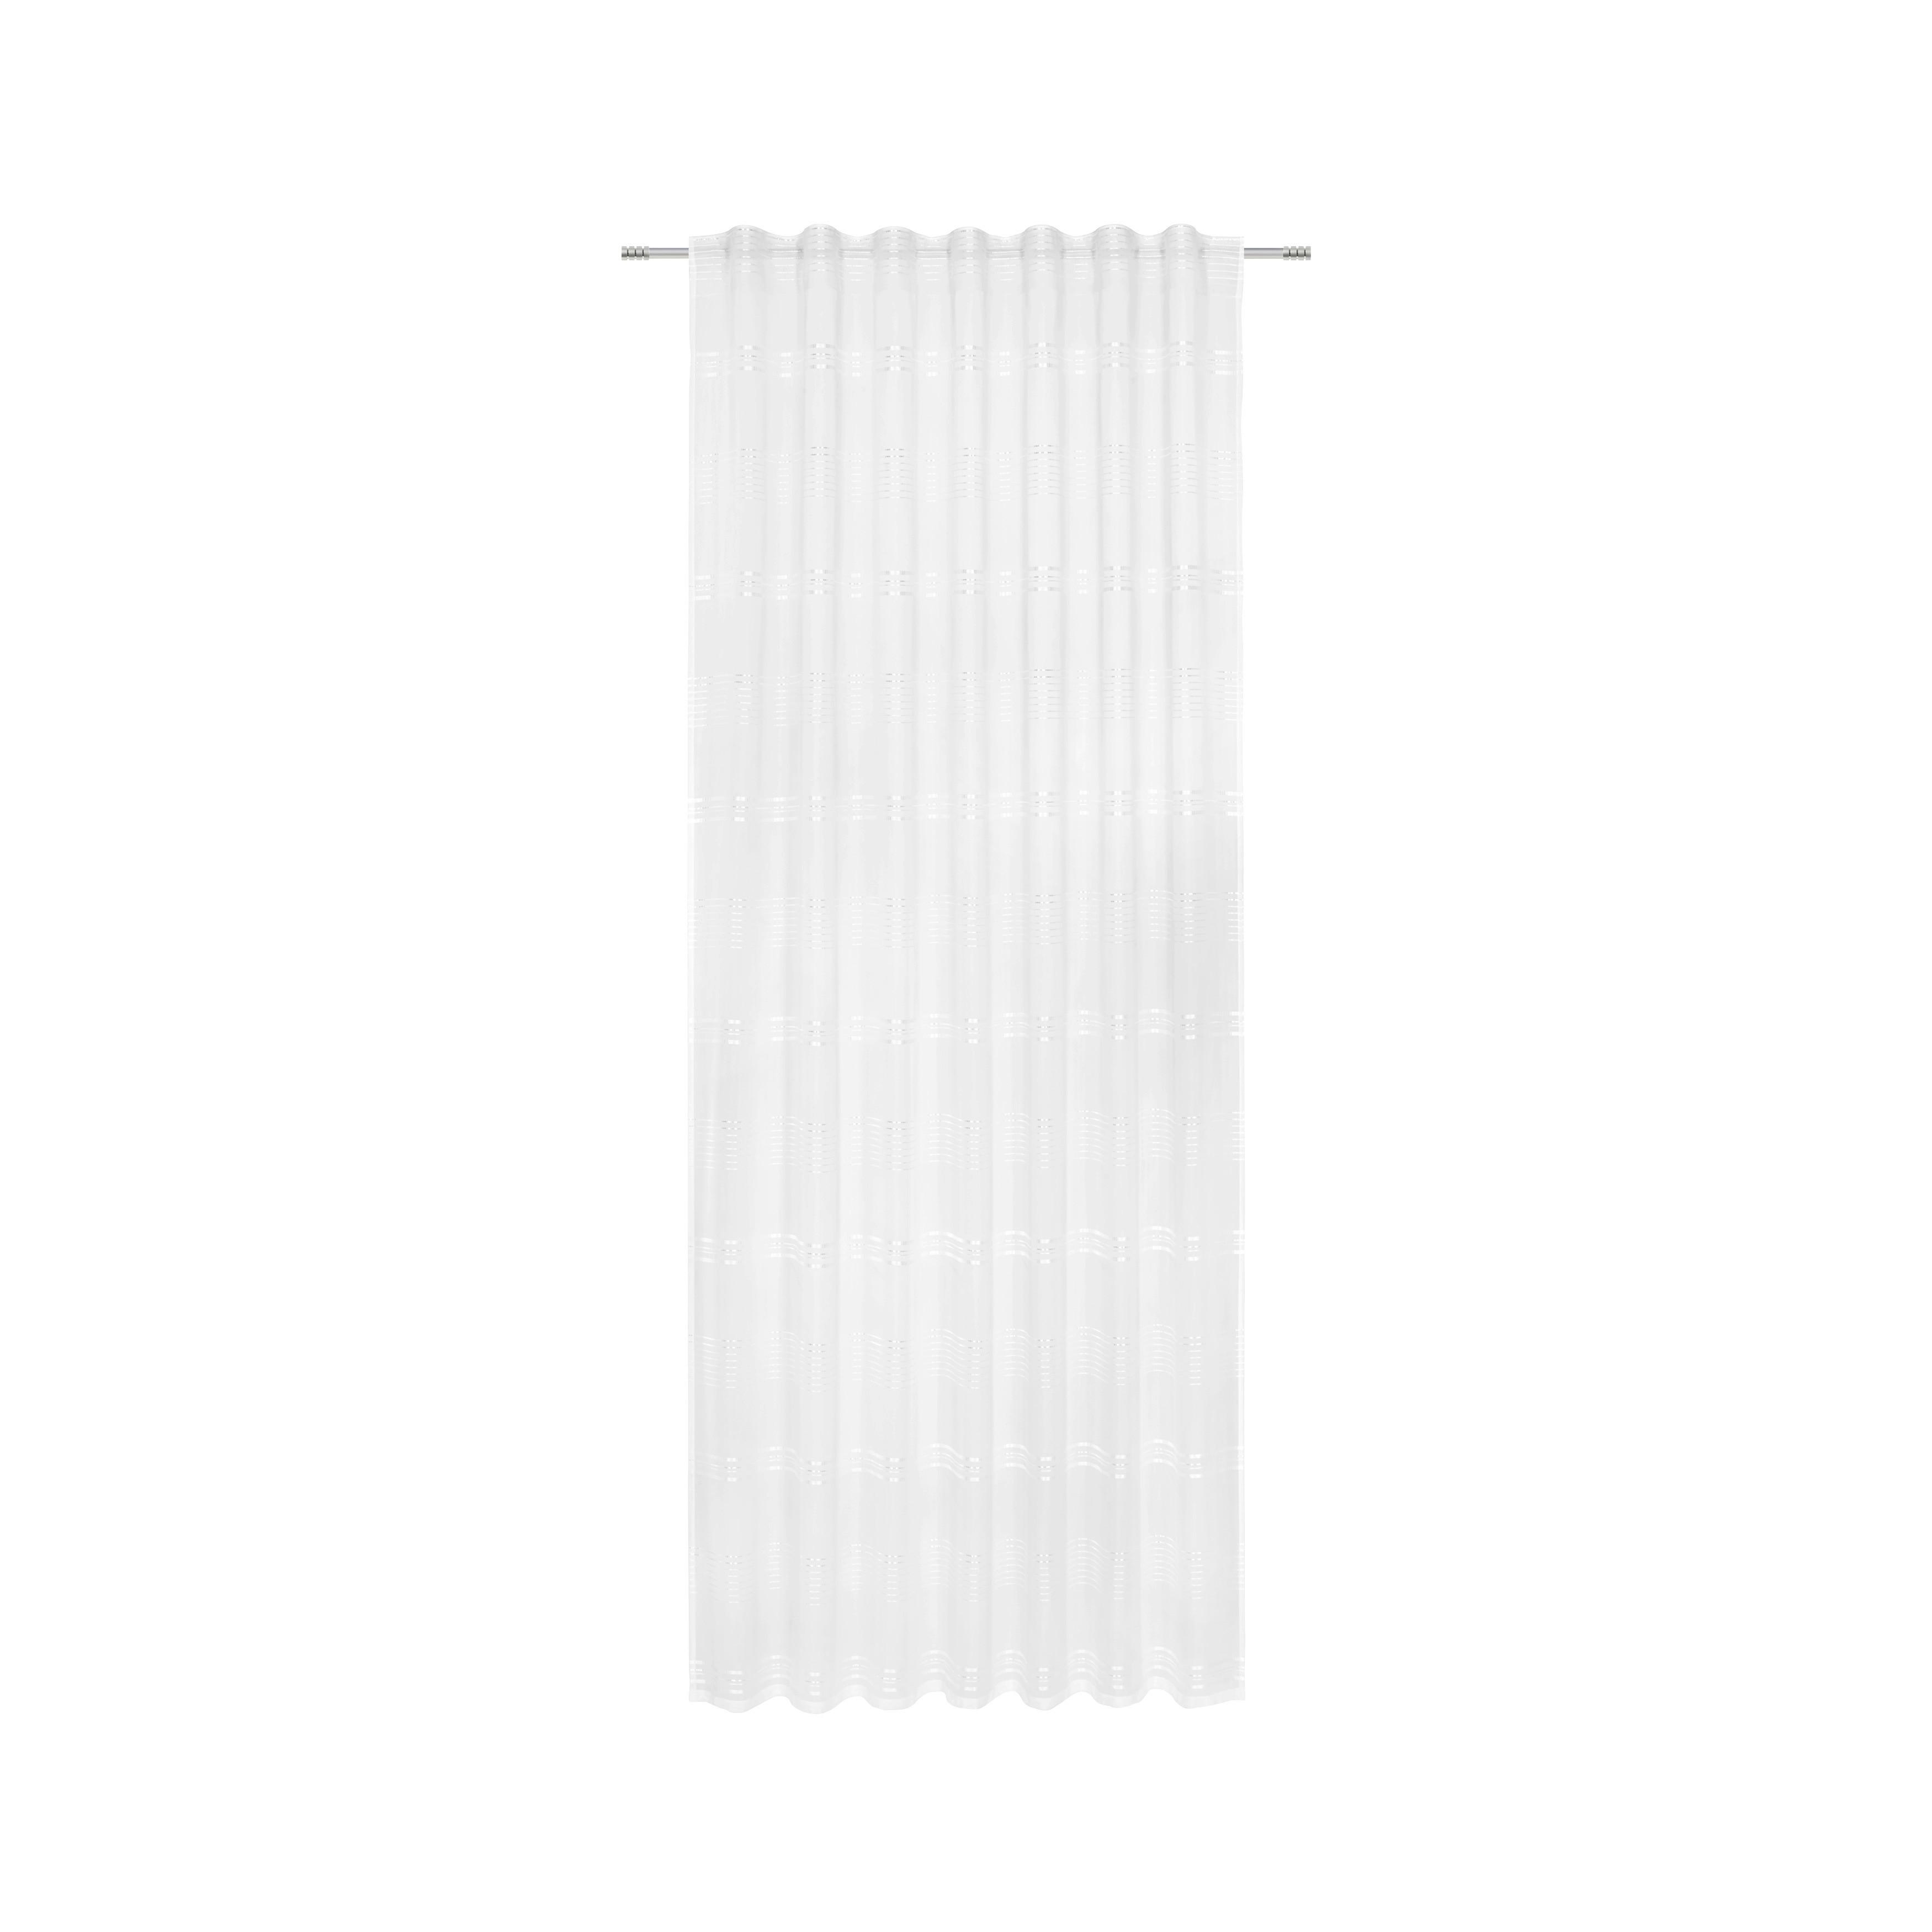 Fertigvorhang Louis in Weiß ca. 140x245cm - Weiß, KONVENTIONELL, Textil (140/245cm) - Modern Living